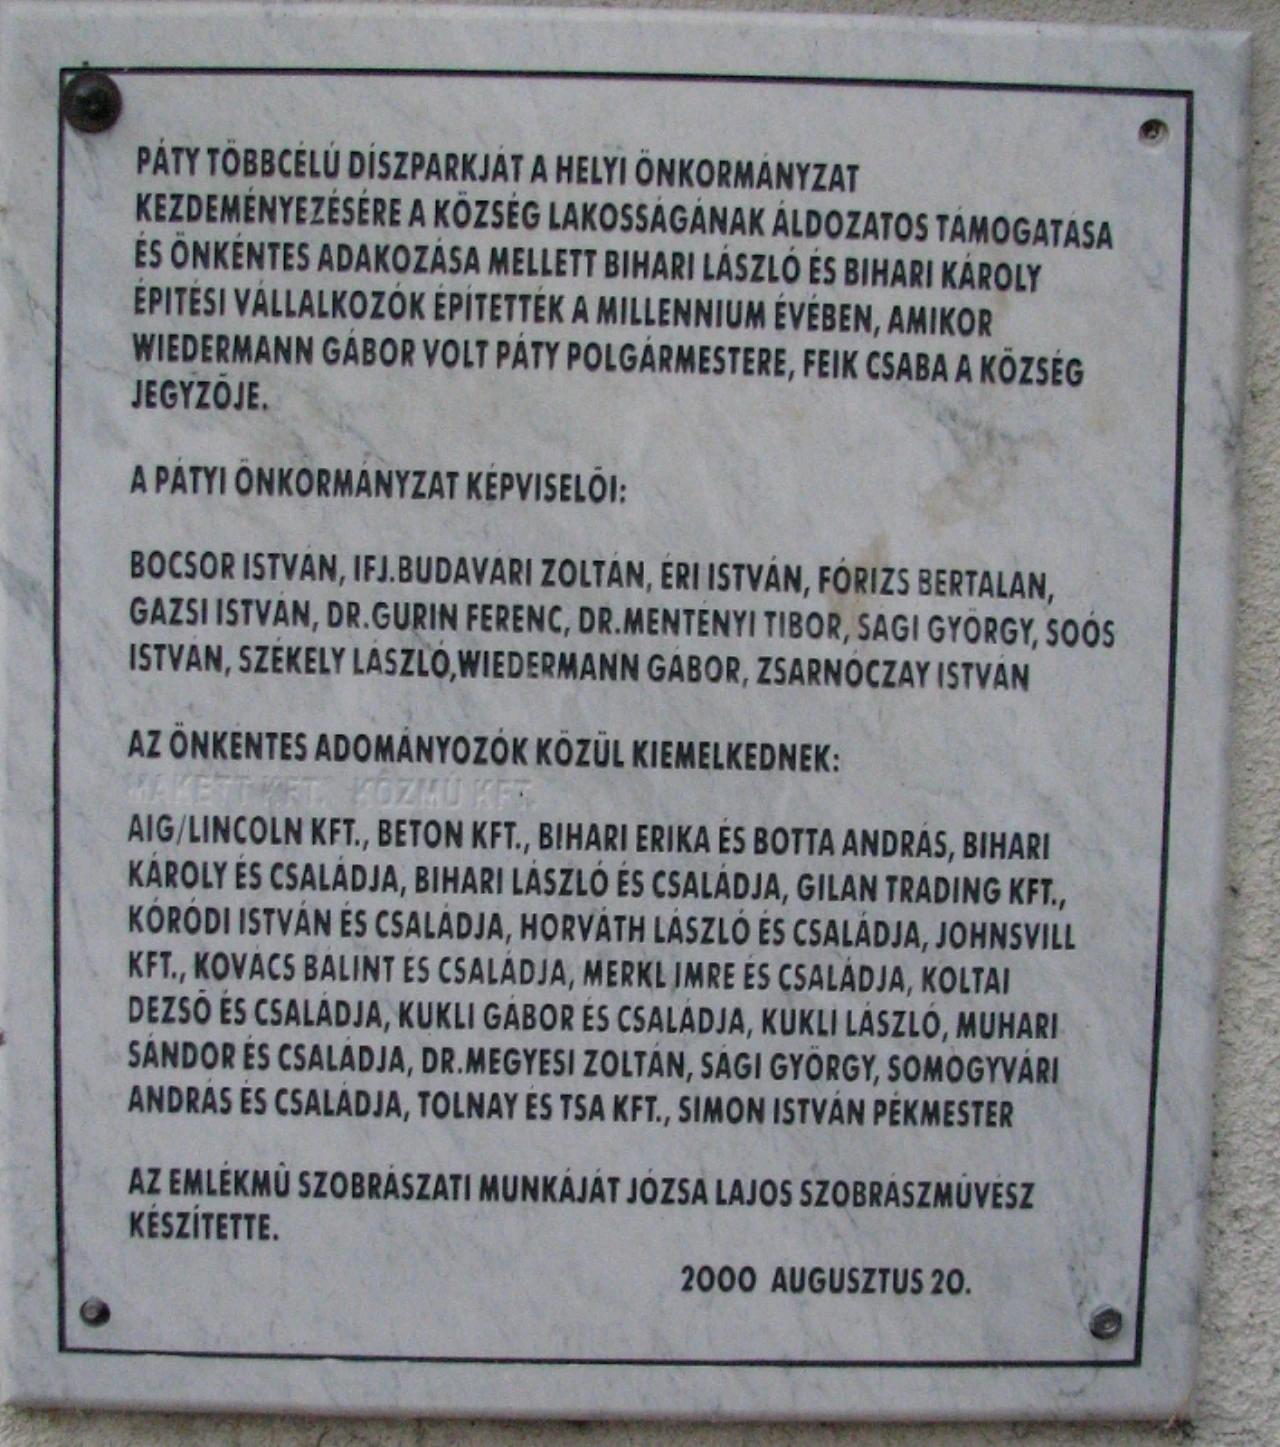 Széchenyi emlékmű nevü látnivaló 5. számú fényképe